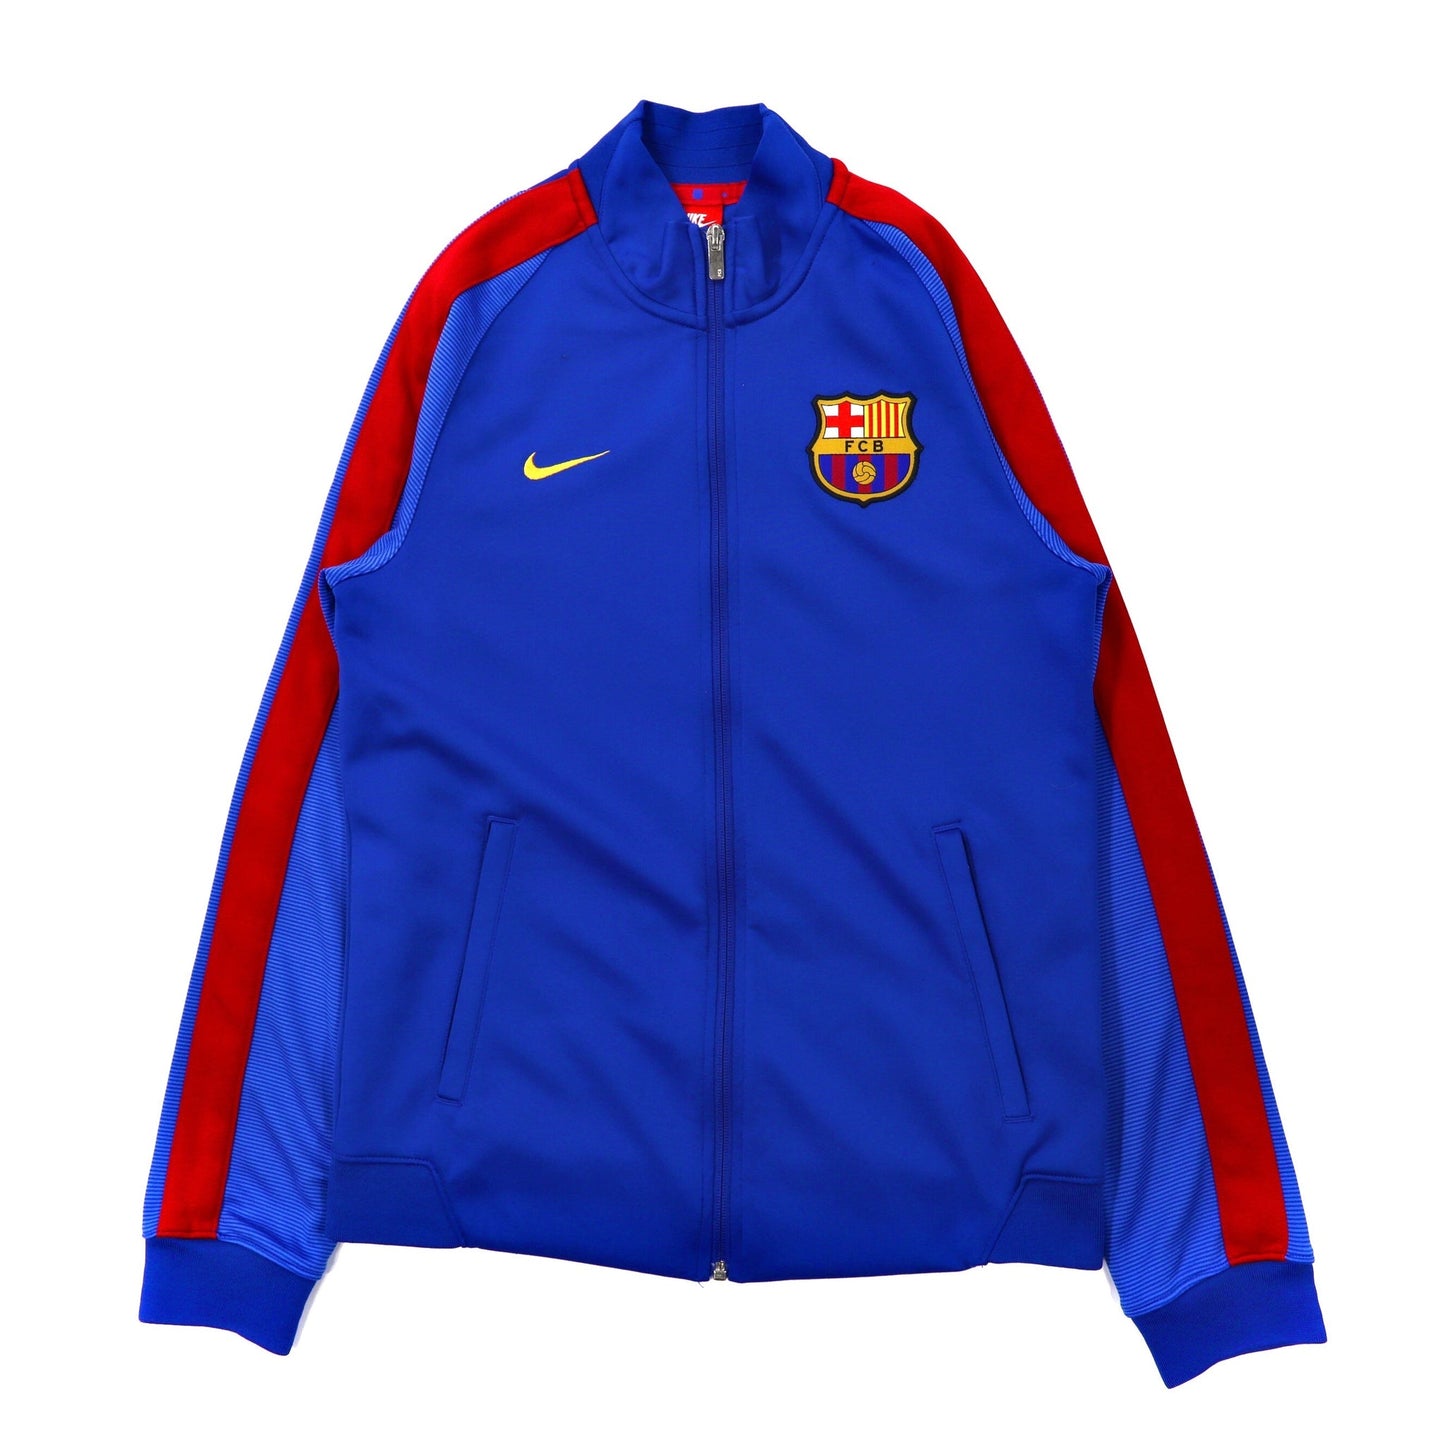 [サッカー] バルセロナナイロンジャケット トラックジャケット8000円でどうでしょうか